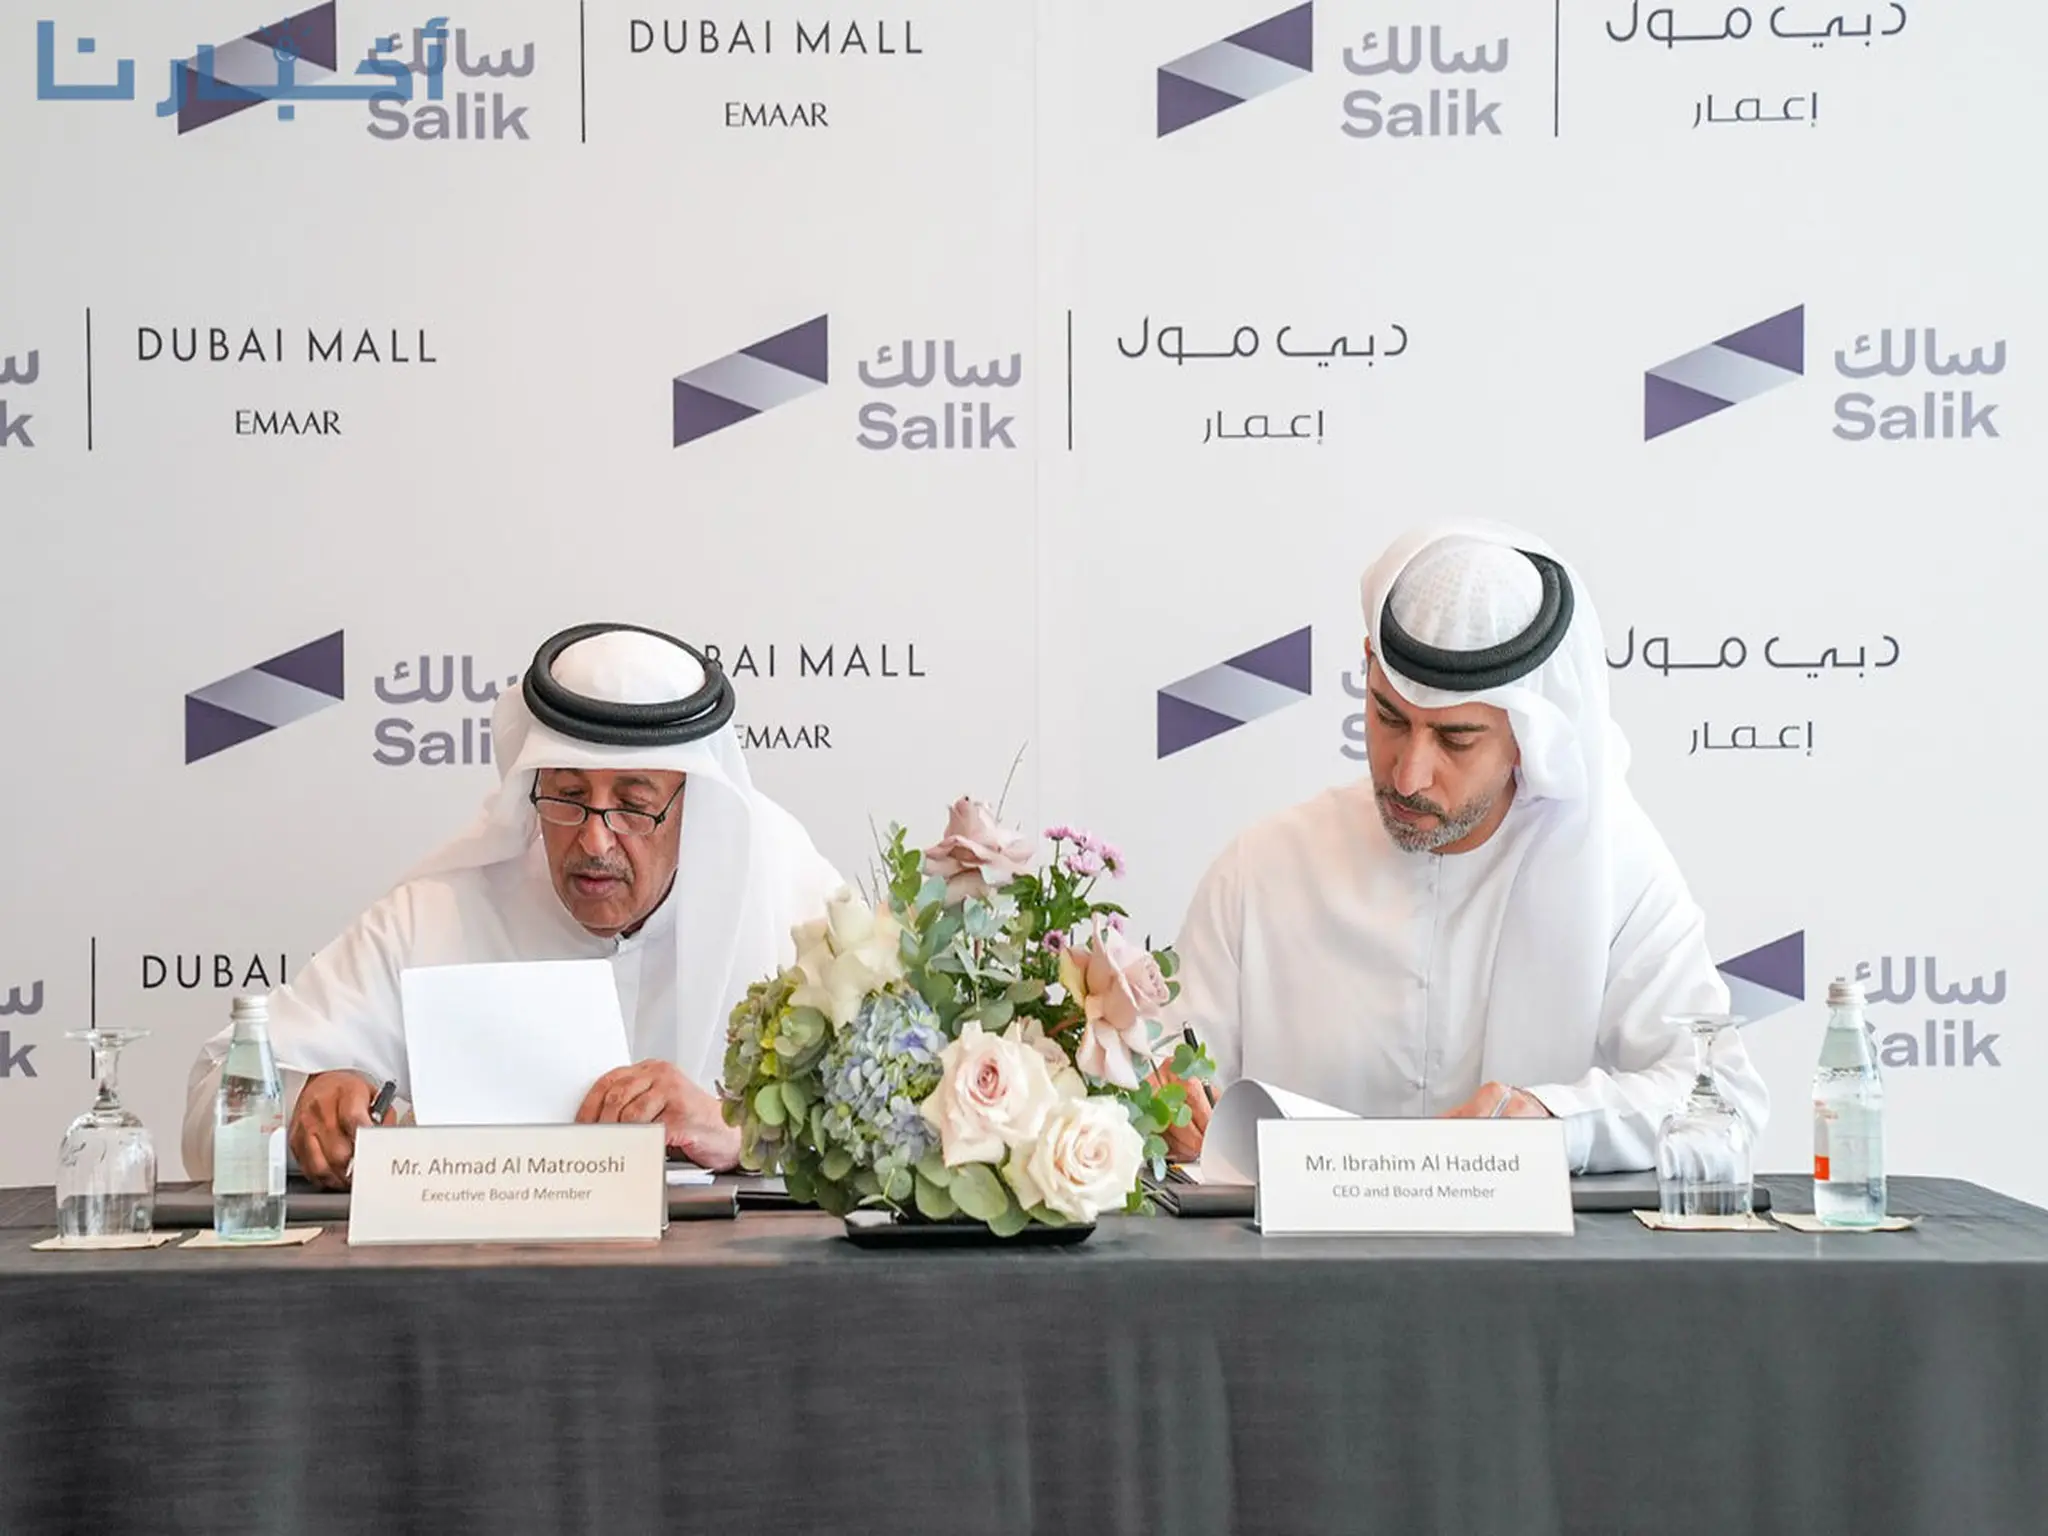 شركة سالك تعلن إطلاق نظام إدارة مواقف فعّال وسلس في "دبي مول"